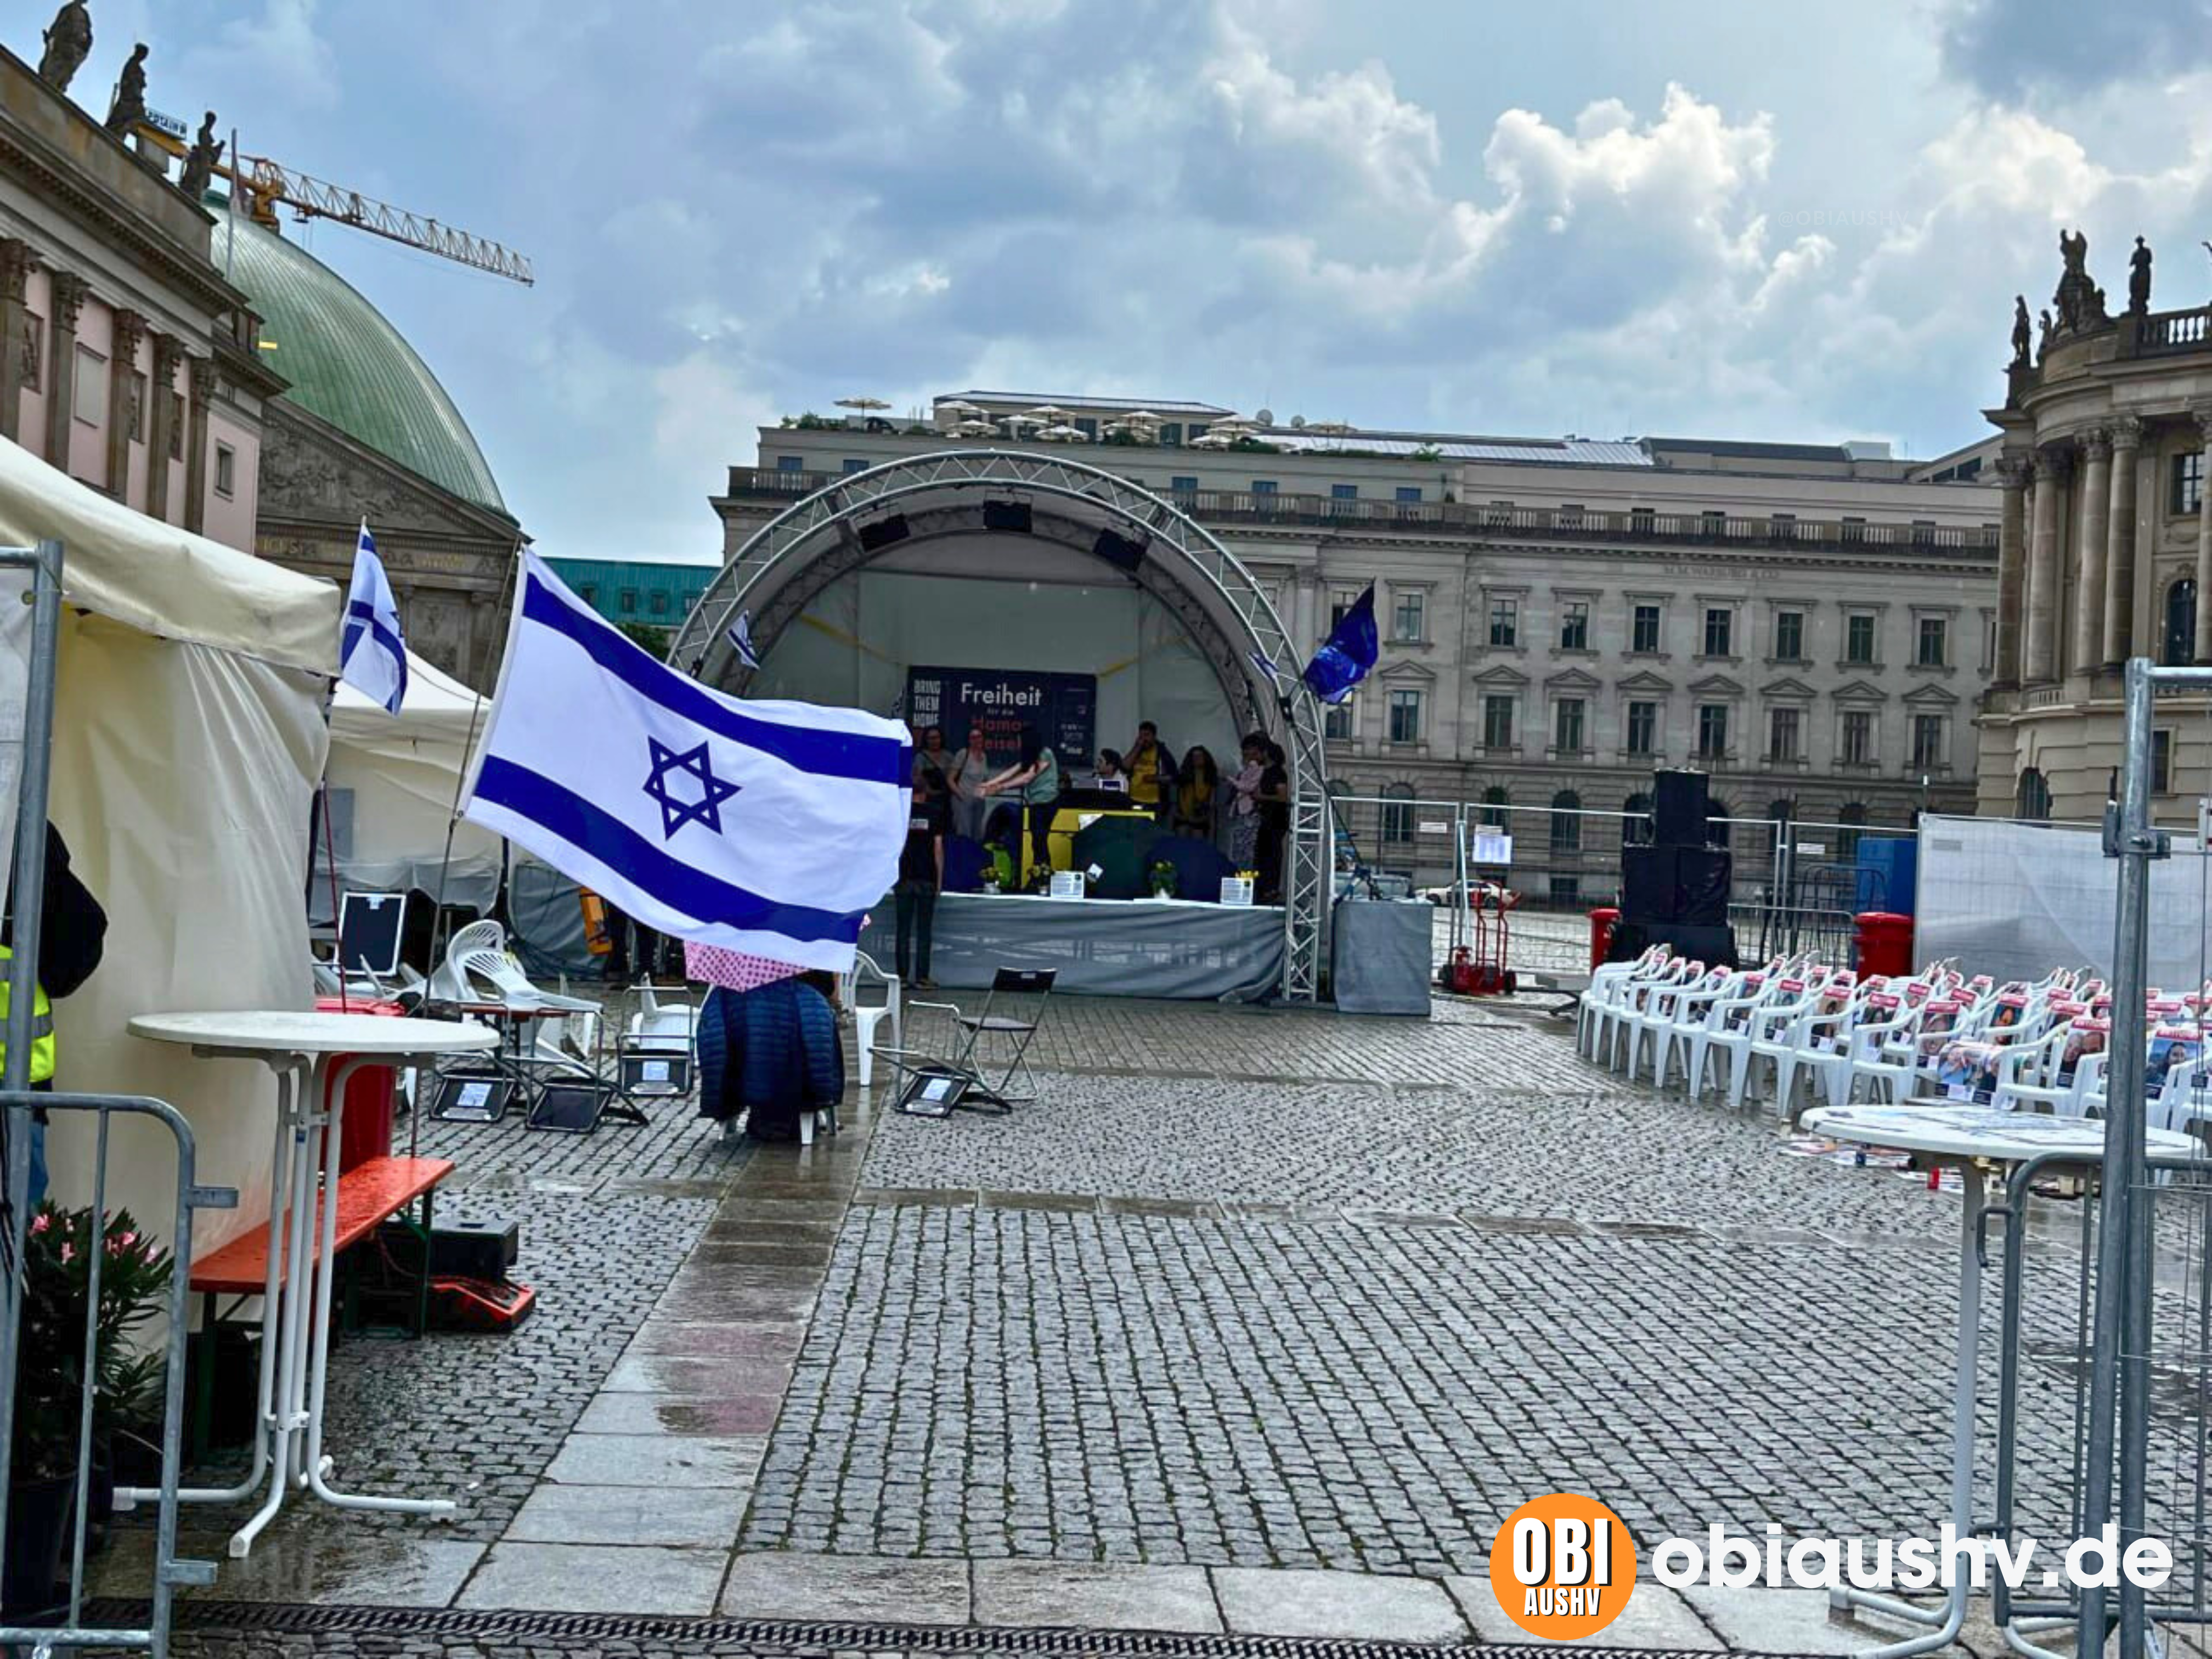 Das Foto zeigt eine Außenszene mit einer Bühne und einem Sitzbereich. Auf der Bühne hängt ein Banner mit dem Wort “Freiheit”. Im Vordergrund sind zwei Flaggen von Israel deutlich zu sehen.